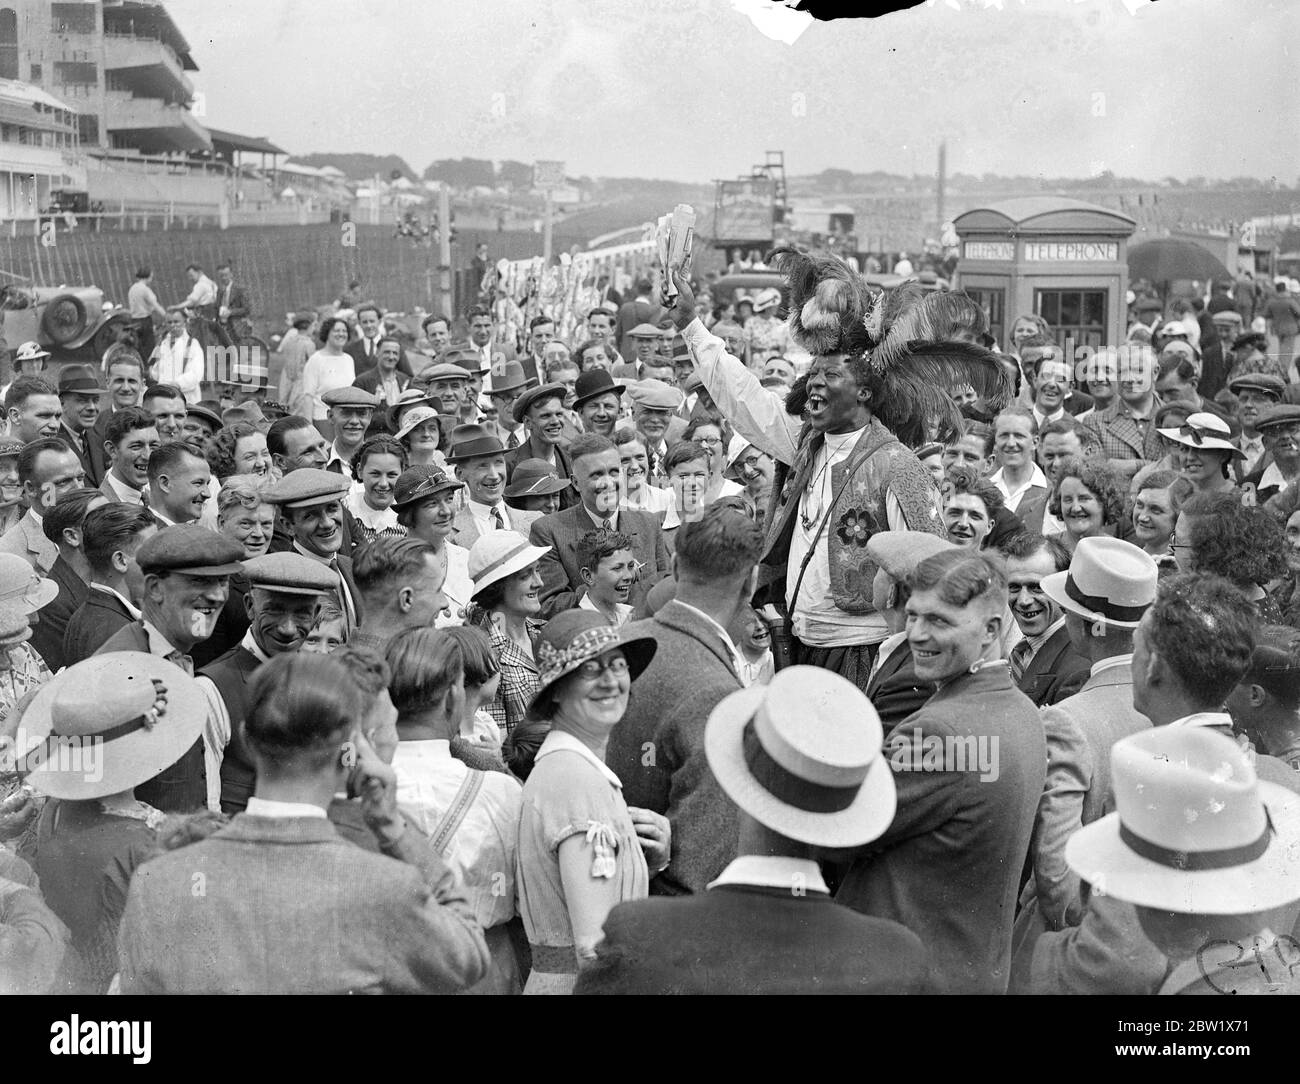 Il principe Monolulu dà la sua punta di Derby alle folle di domenica. Favorita dal tempo estivo reale, grandi folle si sono riunite per ispezionare il corso di Derby a Epsom oggi (Domenica di Derby). Tutte le figure colorate che rendono l'evento più famoso di Derby Day Racing, erano sul campo. Spettacoli fotografici, Ras Prince Monolulu che dà il suo viaggio in Derby alla grande folla sul corso di oggi, (Domenica di Derby). 30 maggio 1937 Foto Stock